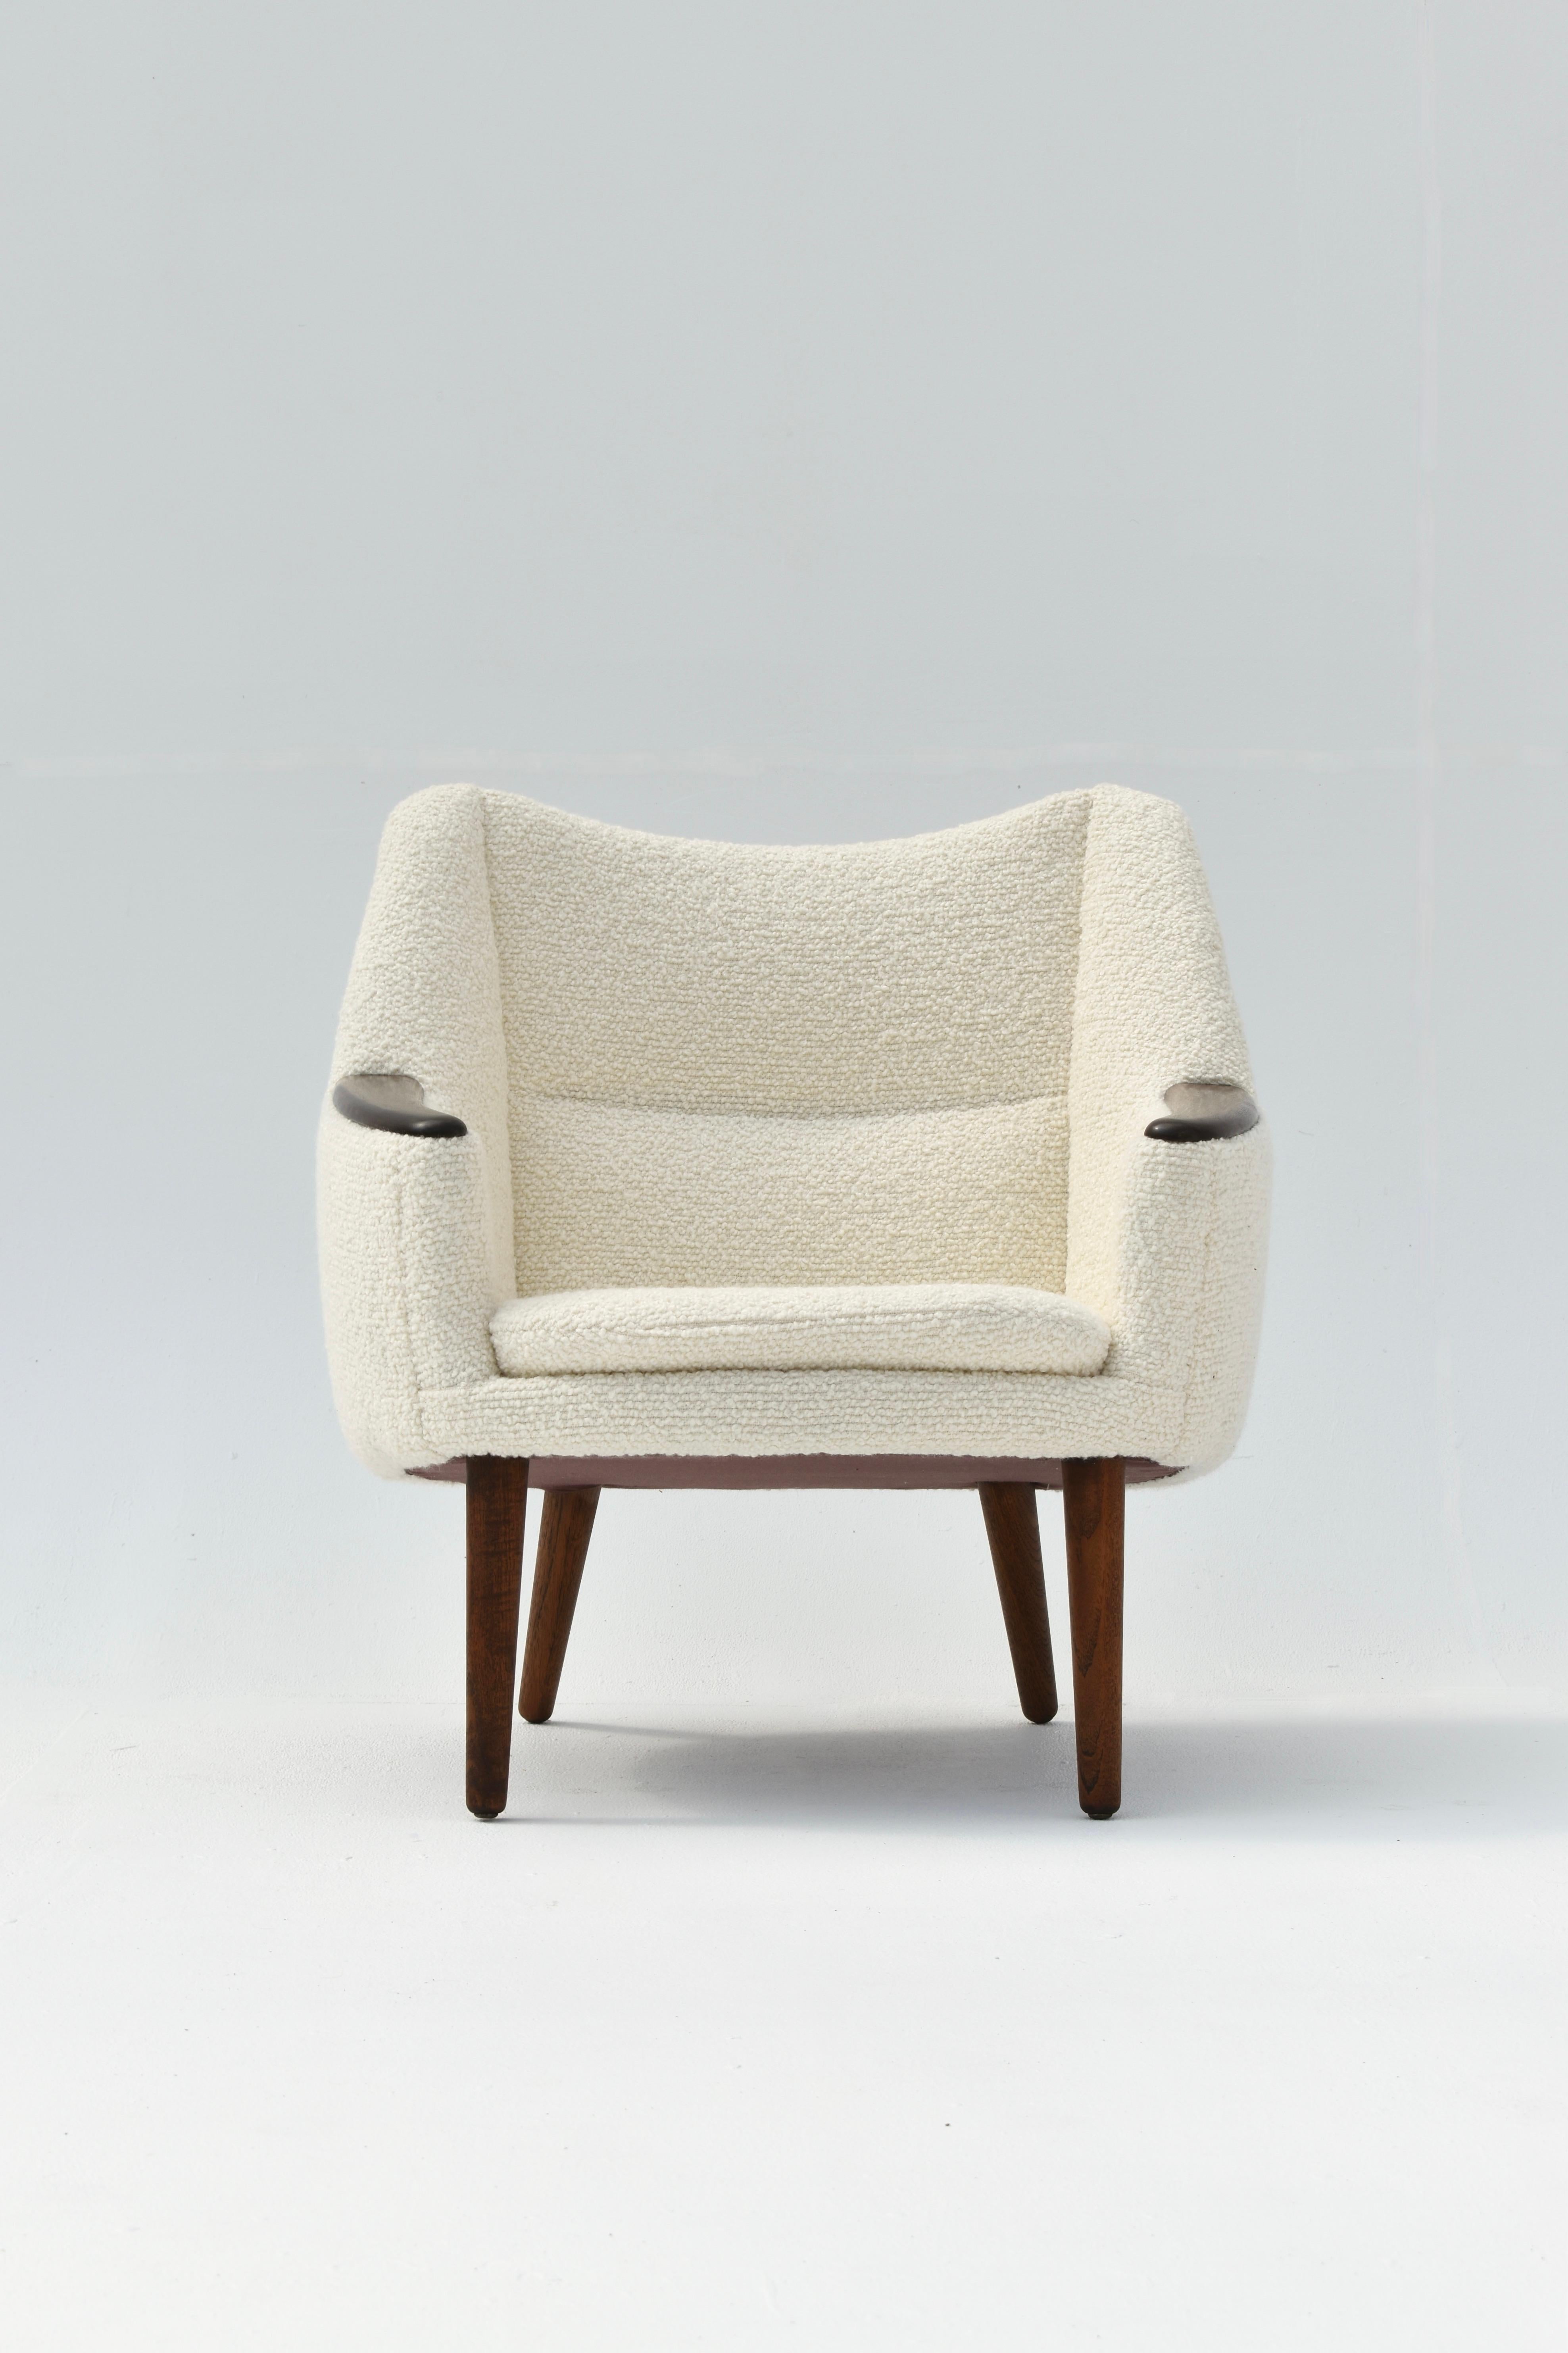 Chaise longue modèle 58, rarement vue, conçue par Kurt Østervig en 1958 pour Henry Rolschau Mobler, Danemark.

Un cadre en forme de cocon très accueillant, rembourré au plus haut niveau en laine Boucle de Bute Fabrics, en Écosse. Le tissu tactile